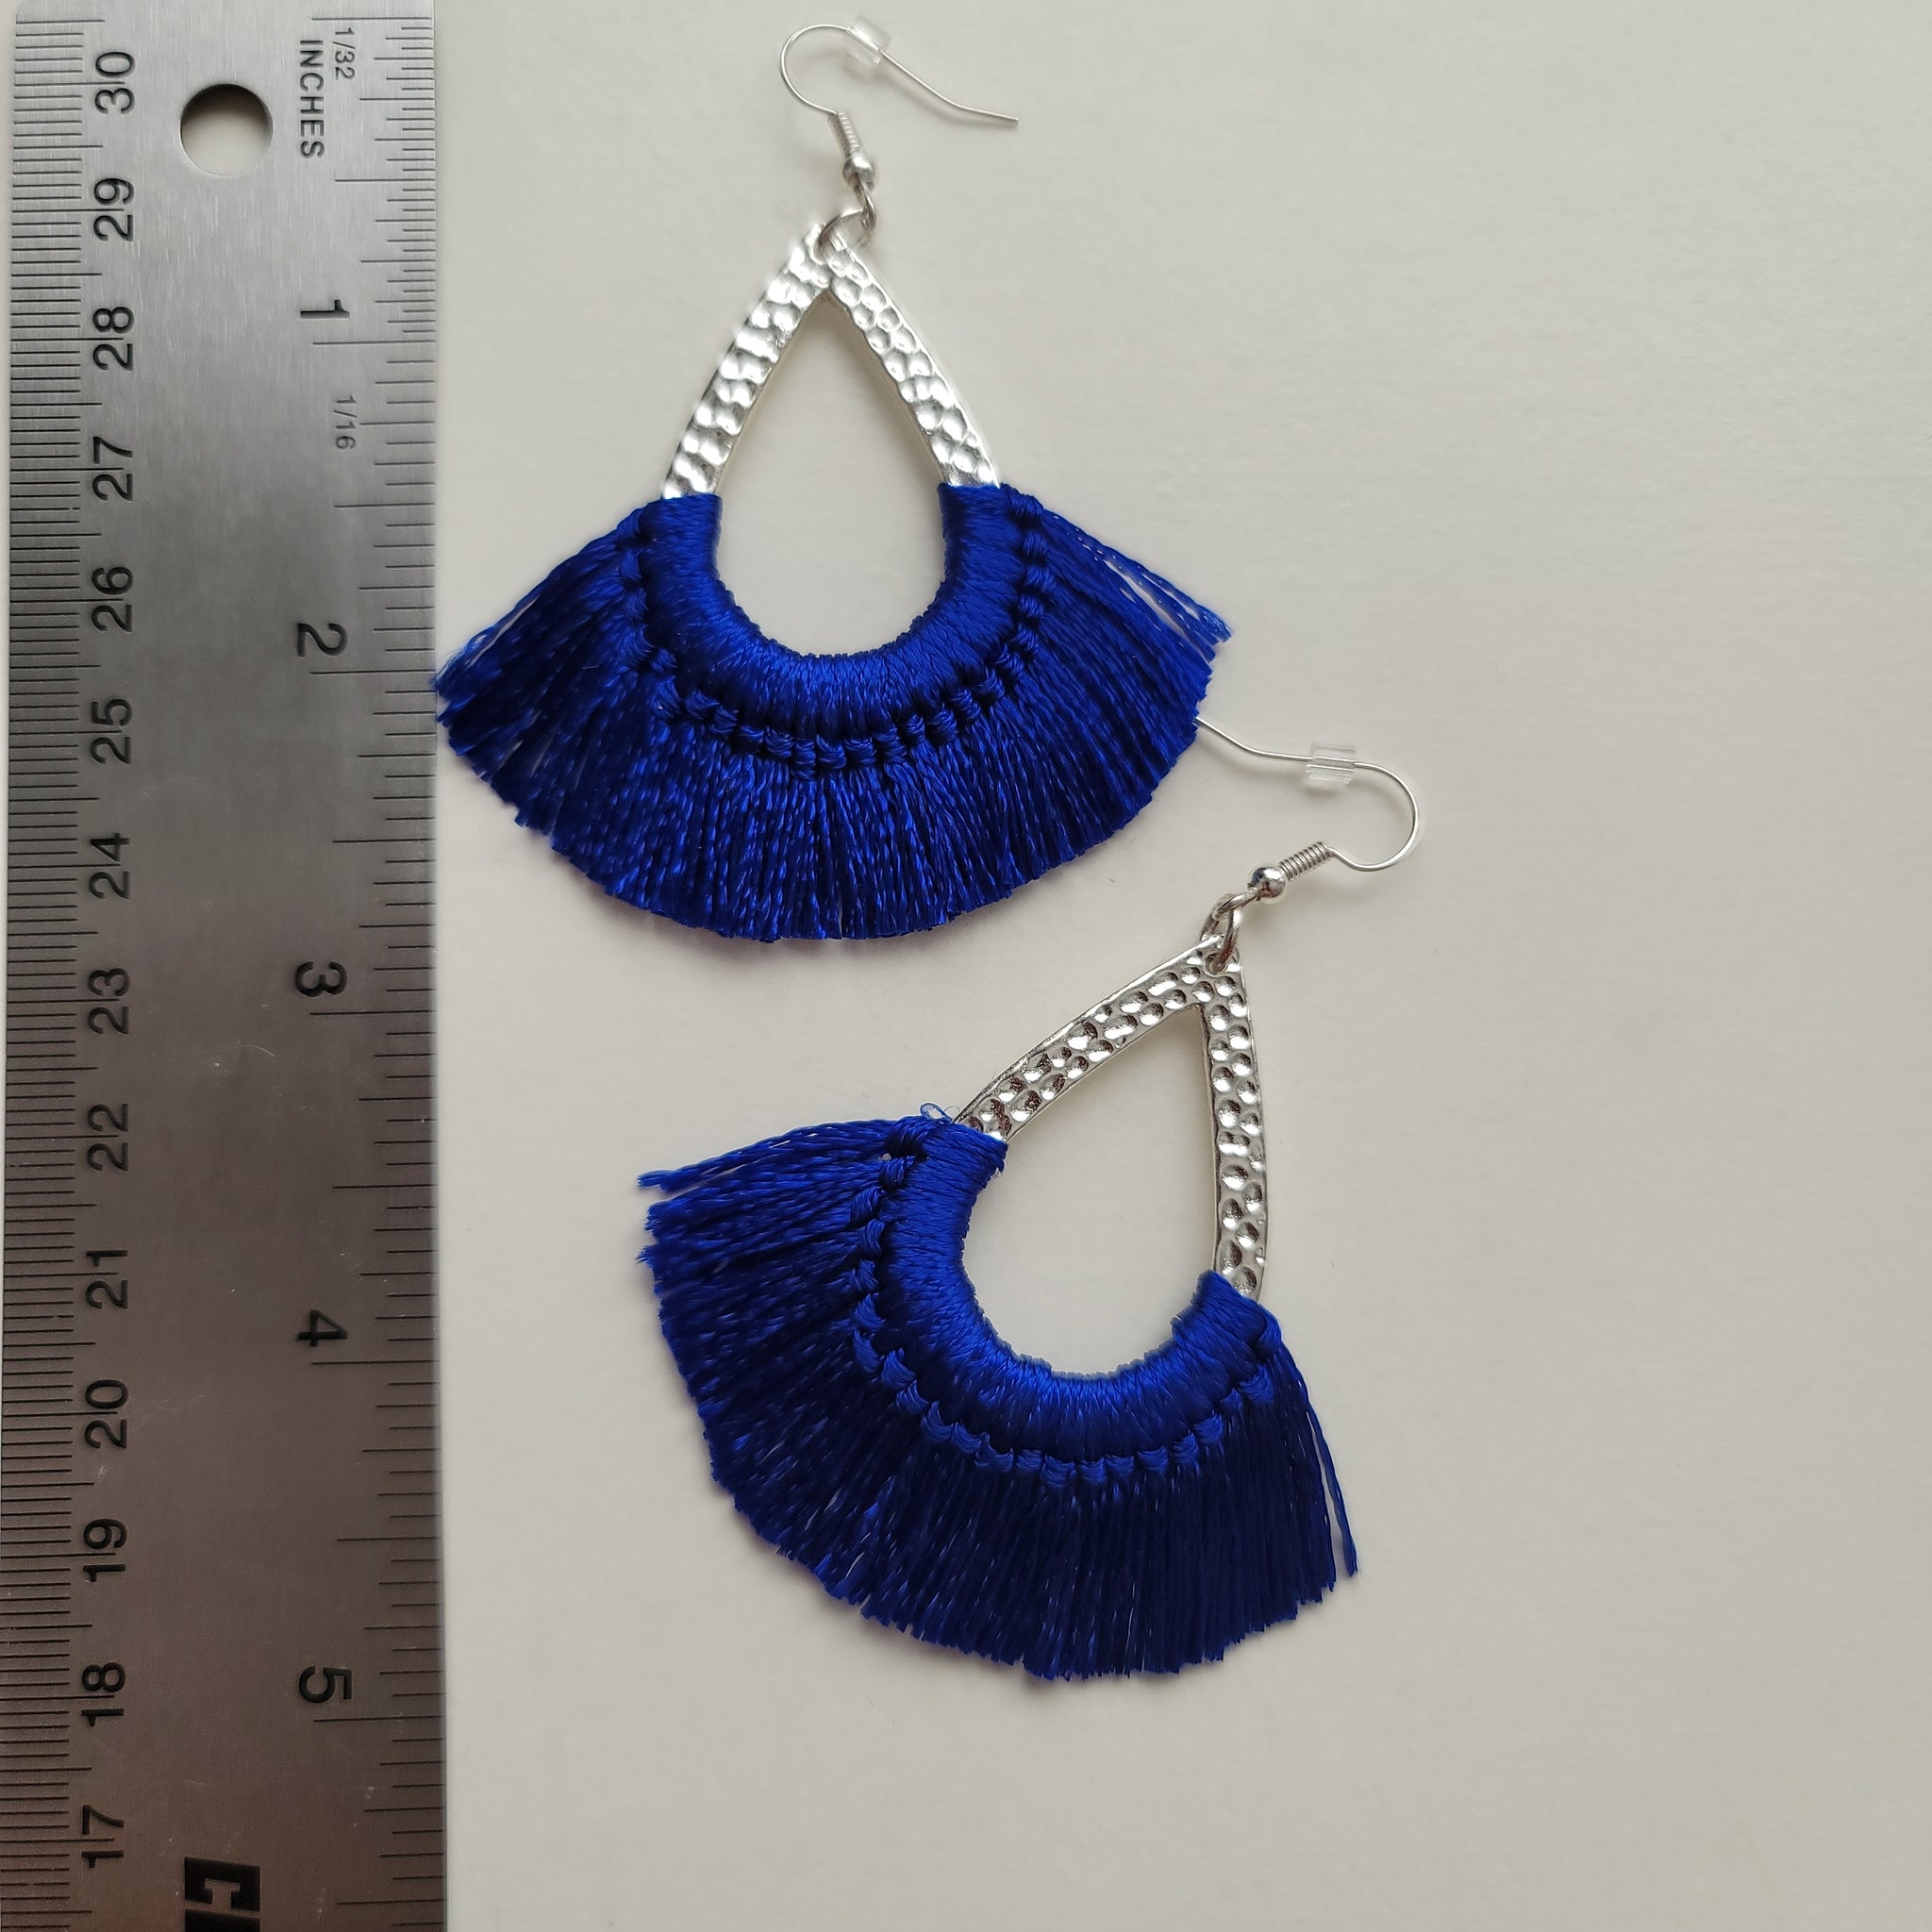 Blue Textured Silver Tassel Earrings